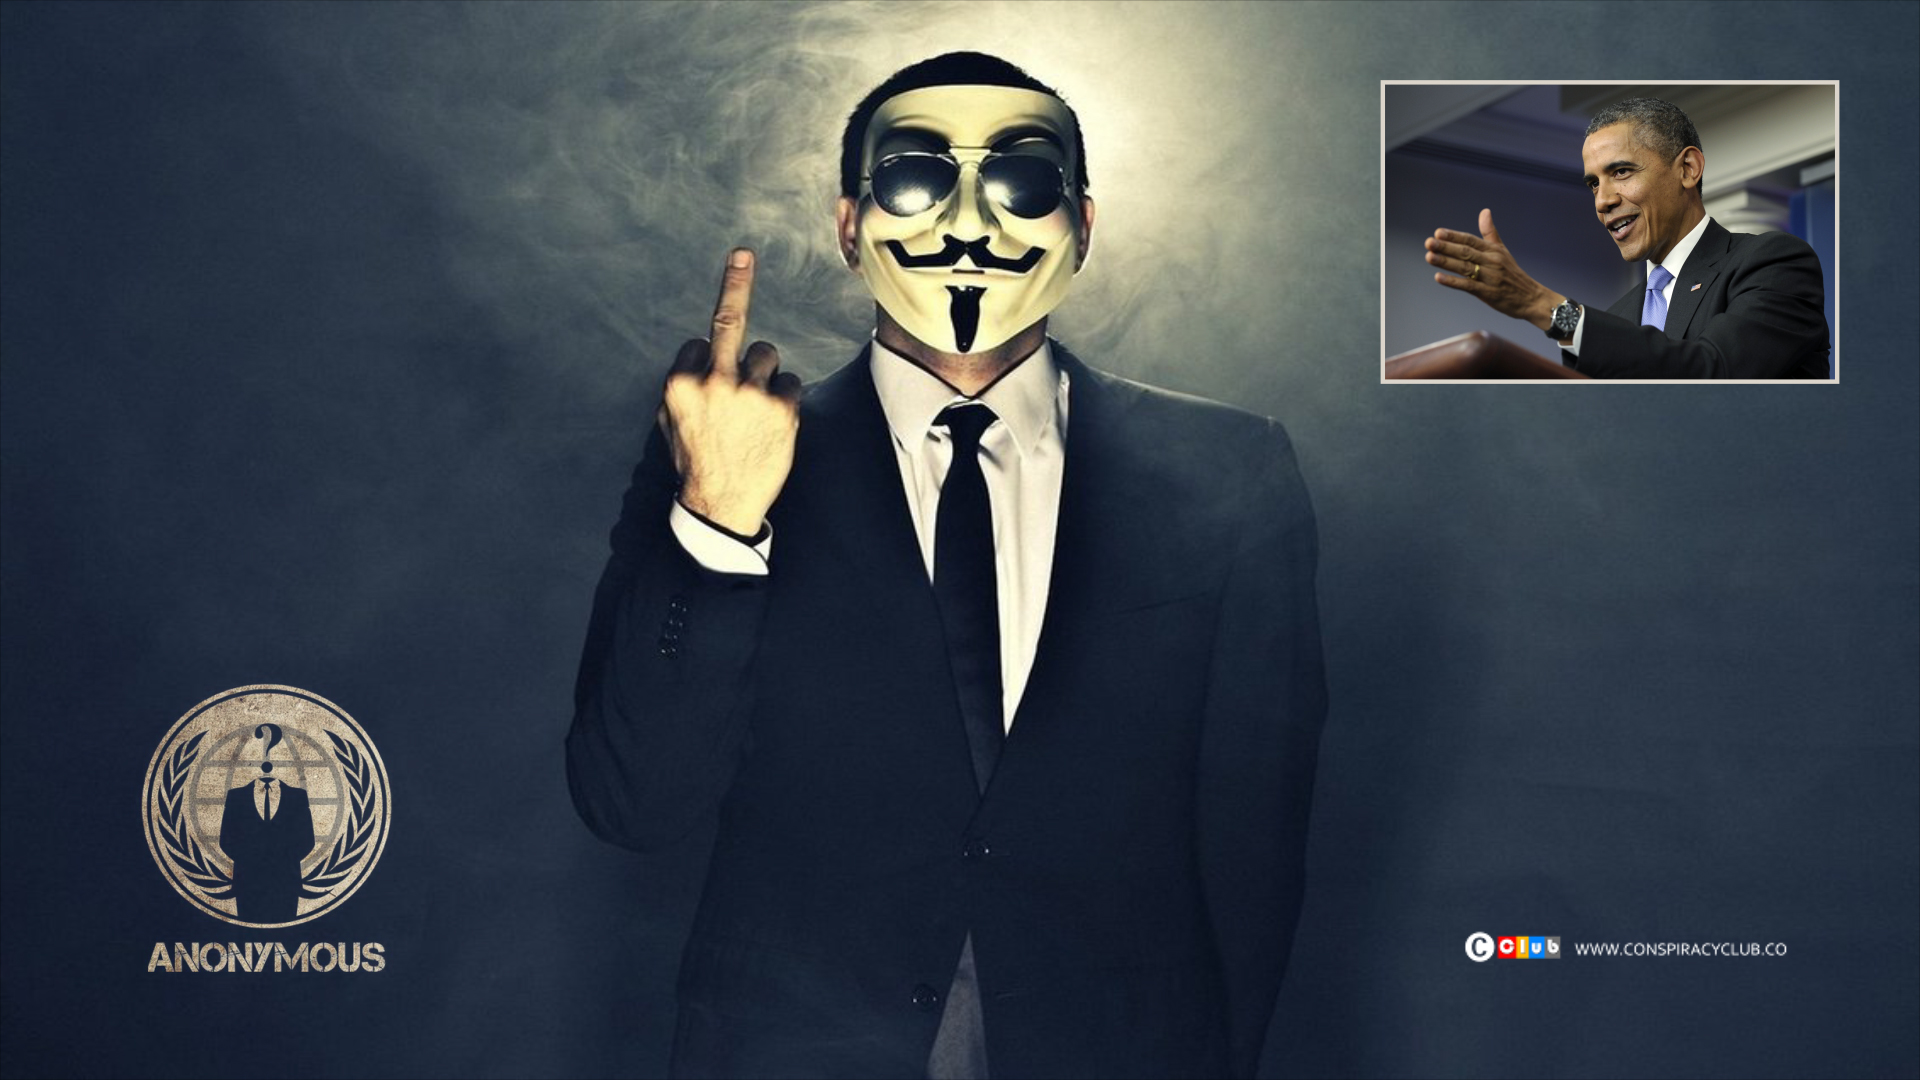 Obama’ya Anonymous'tan mesaj: "Bizim gördüğümüzü sen de görüyor musun?"